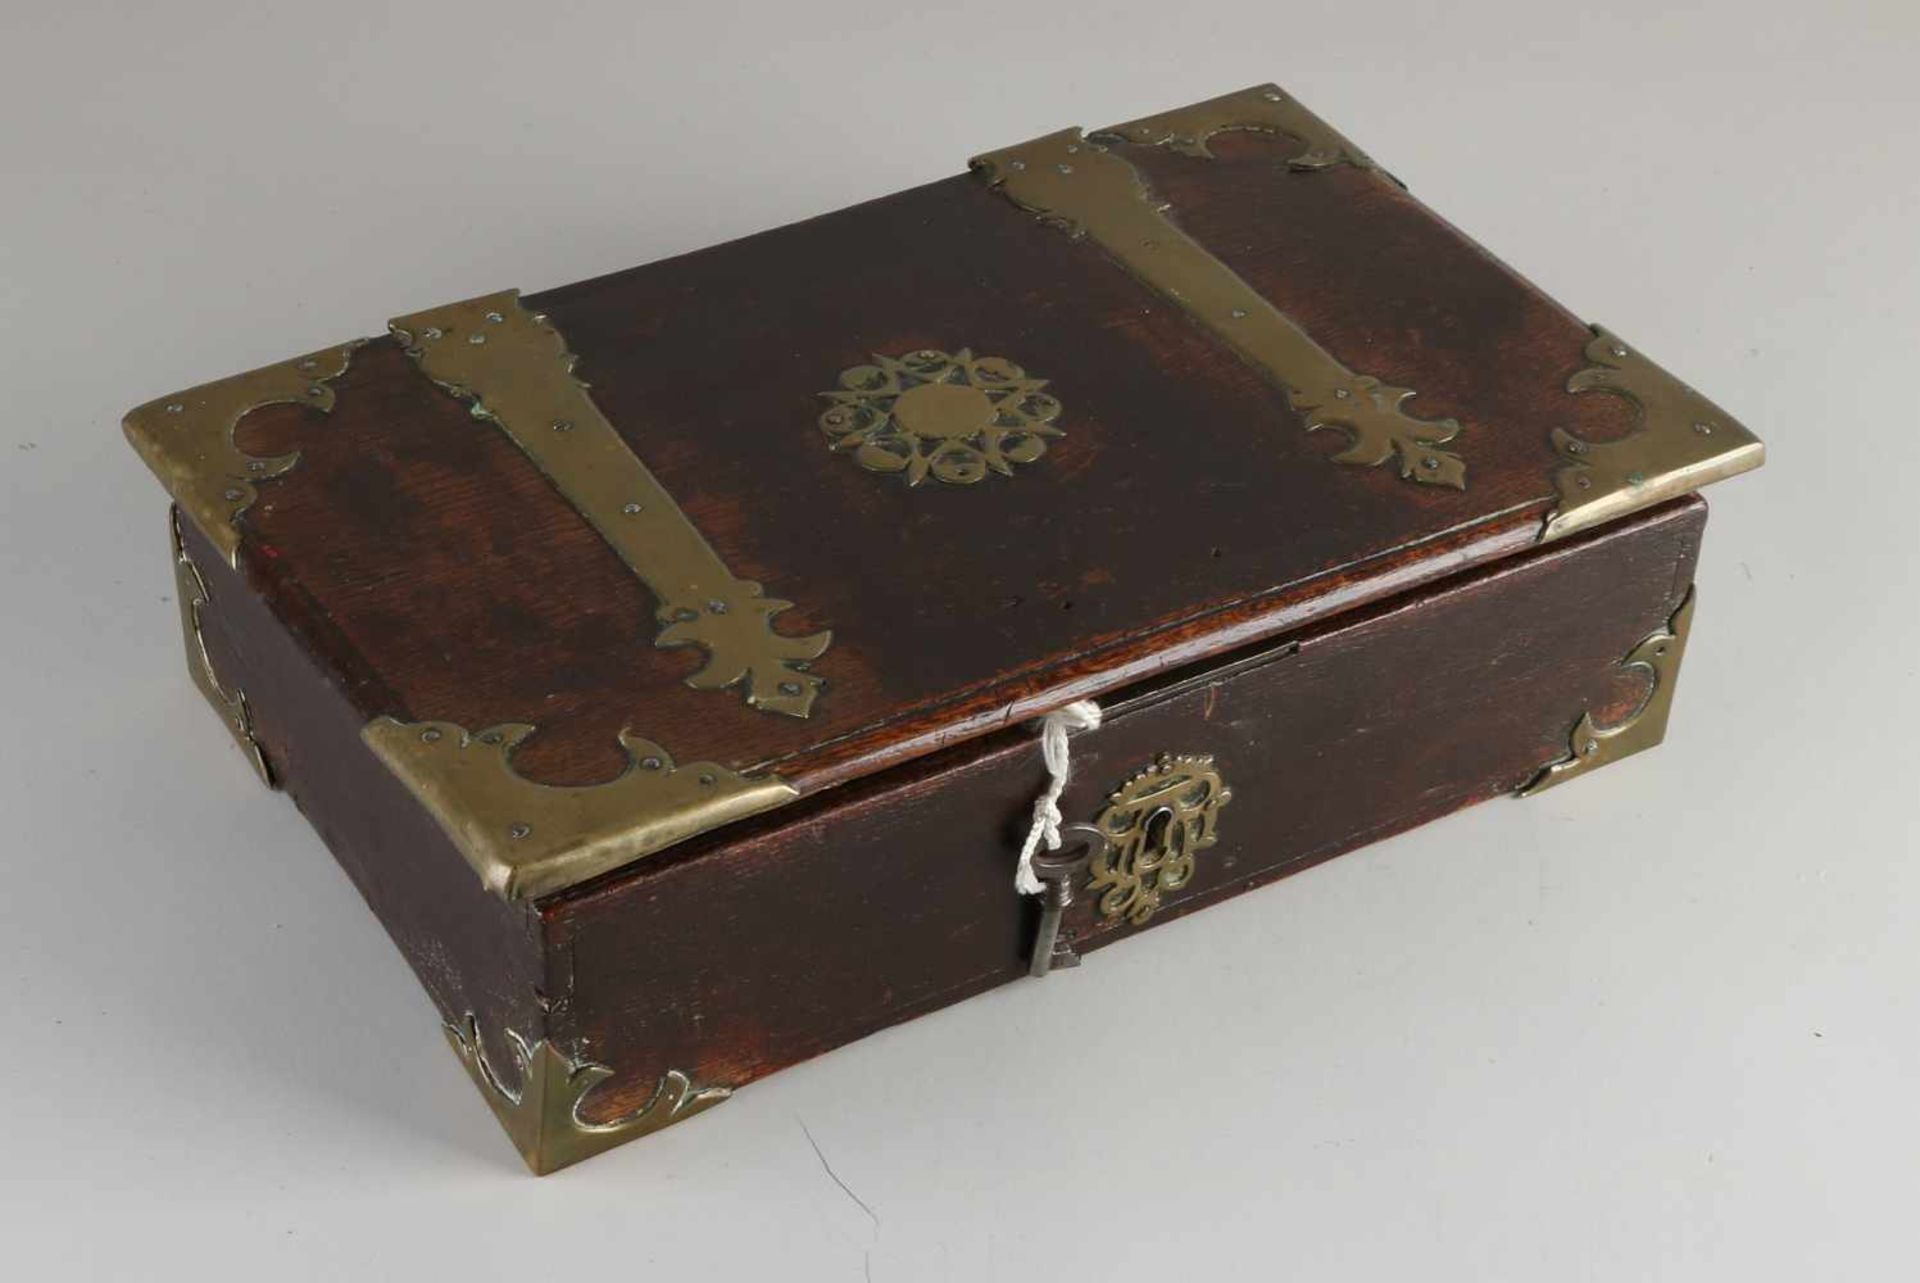 Dokumentenbox aus Eichenholz aus dem 18. Jahrhundert mit original Messingbeschlägen und Schloss.